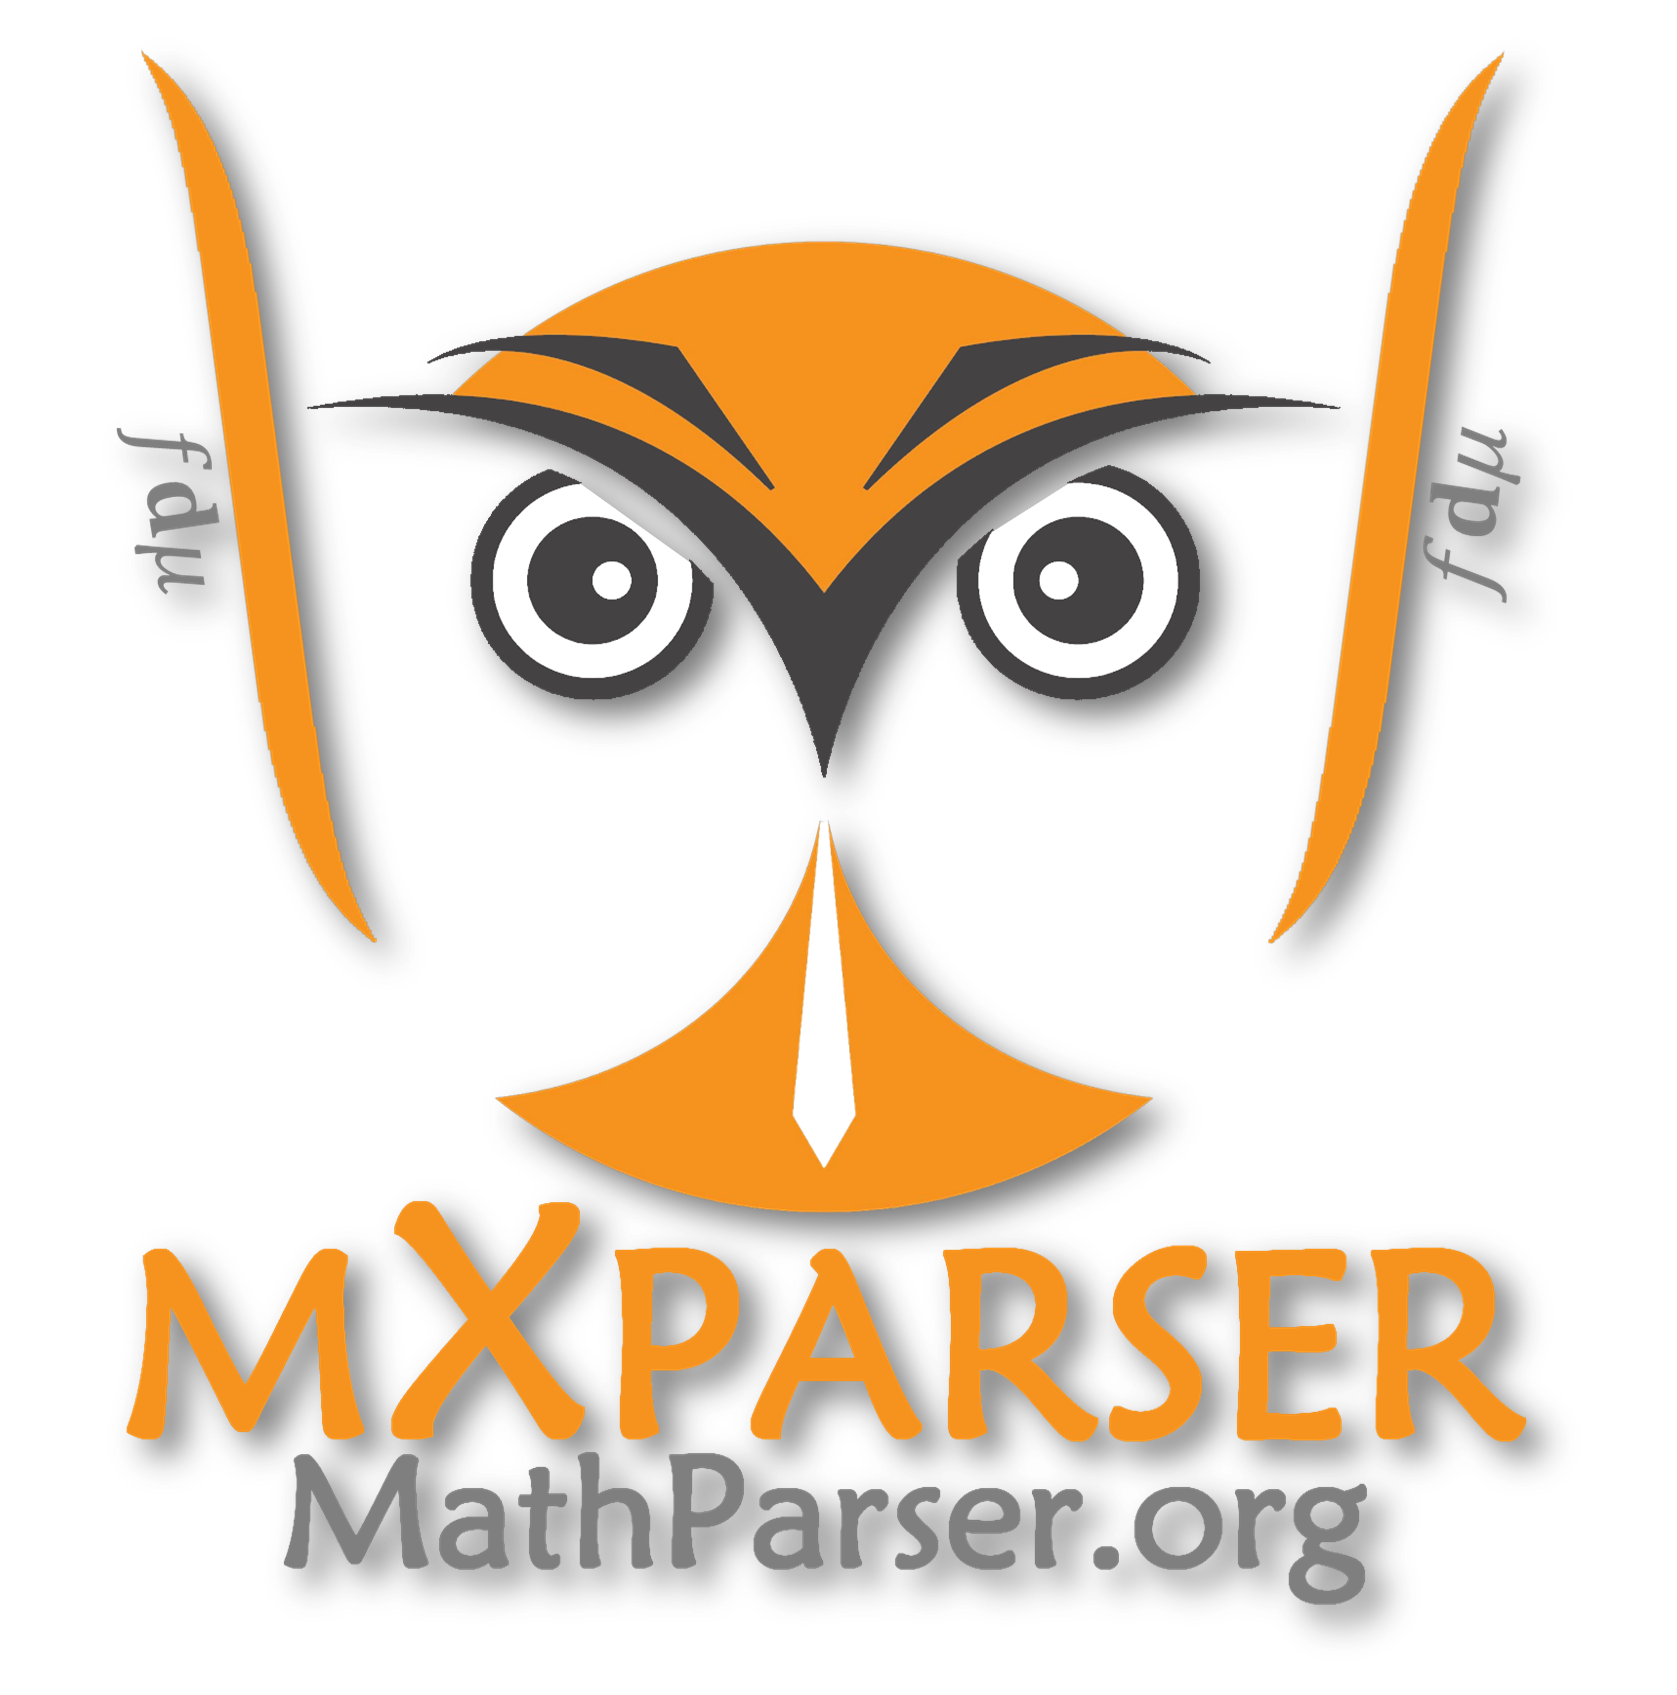 mXparser - logo